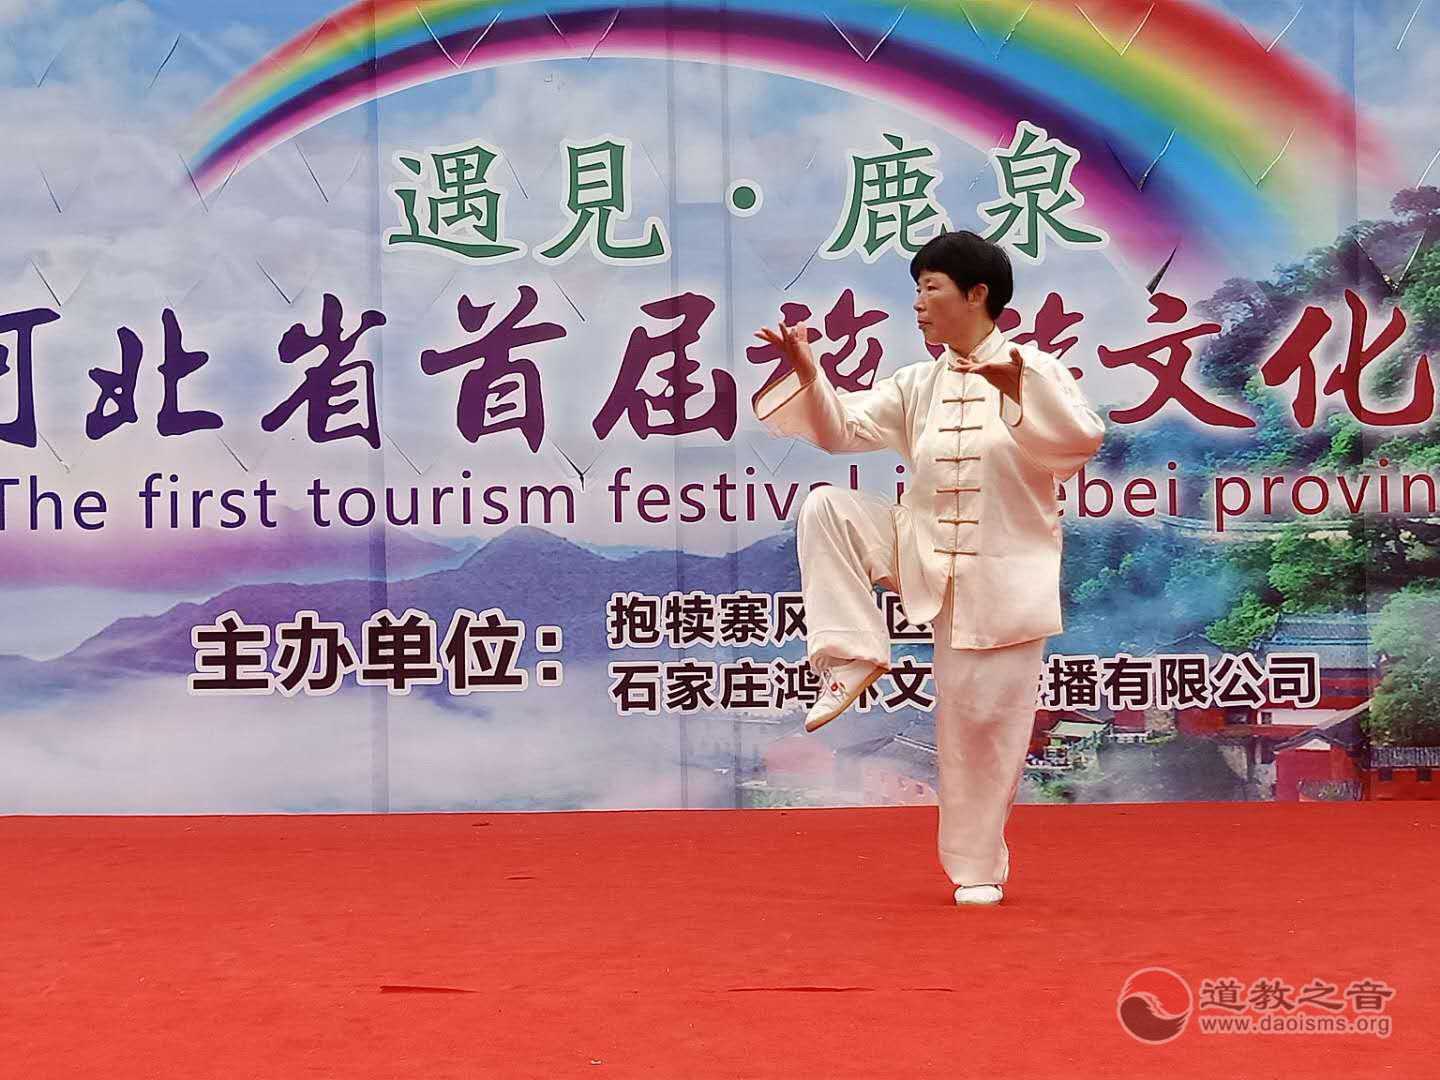 玄岳三丰太极拳亮相河北首届旅游文化节-道音文化